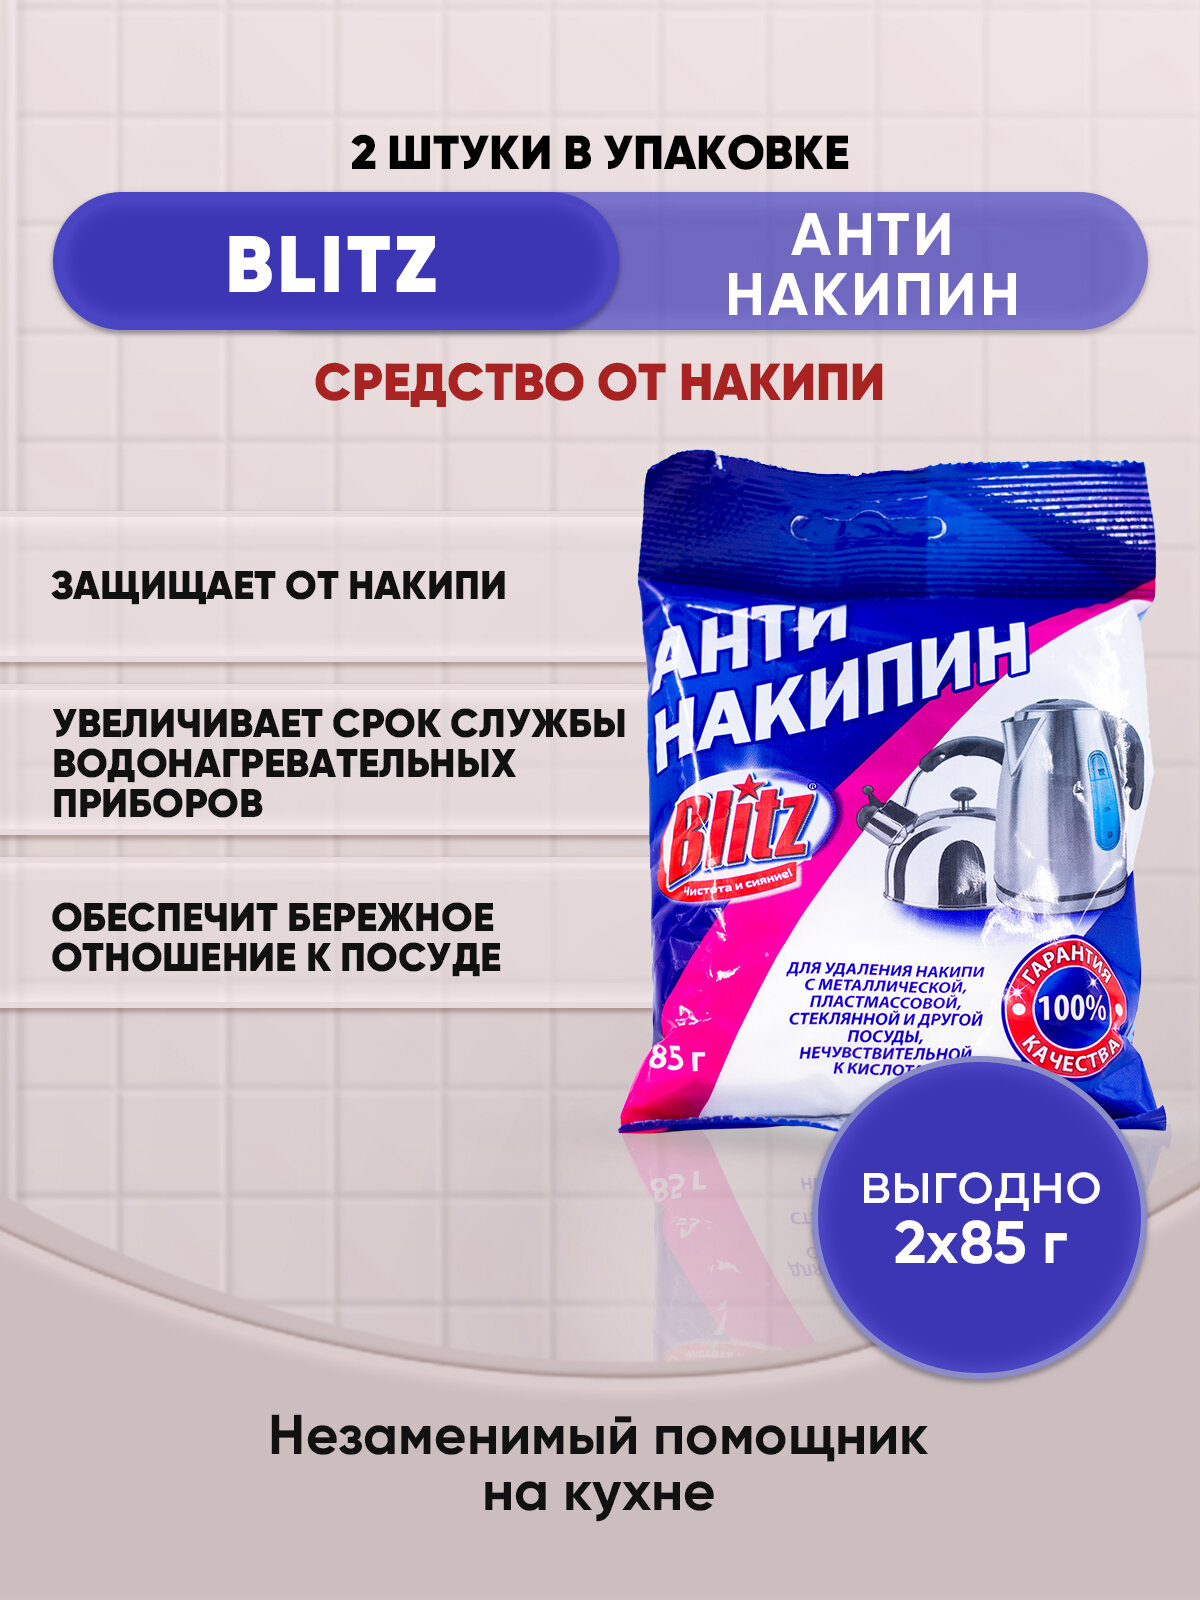 BLITZ Антинакипин средство от накипи 85г/2шт